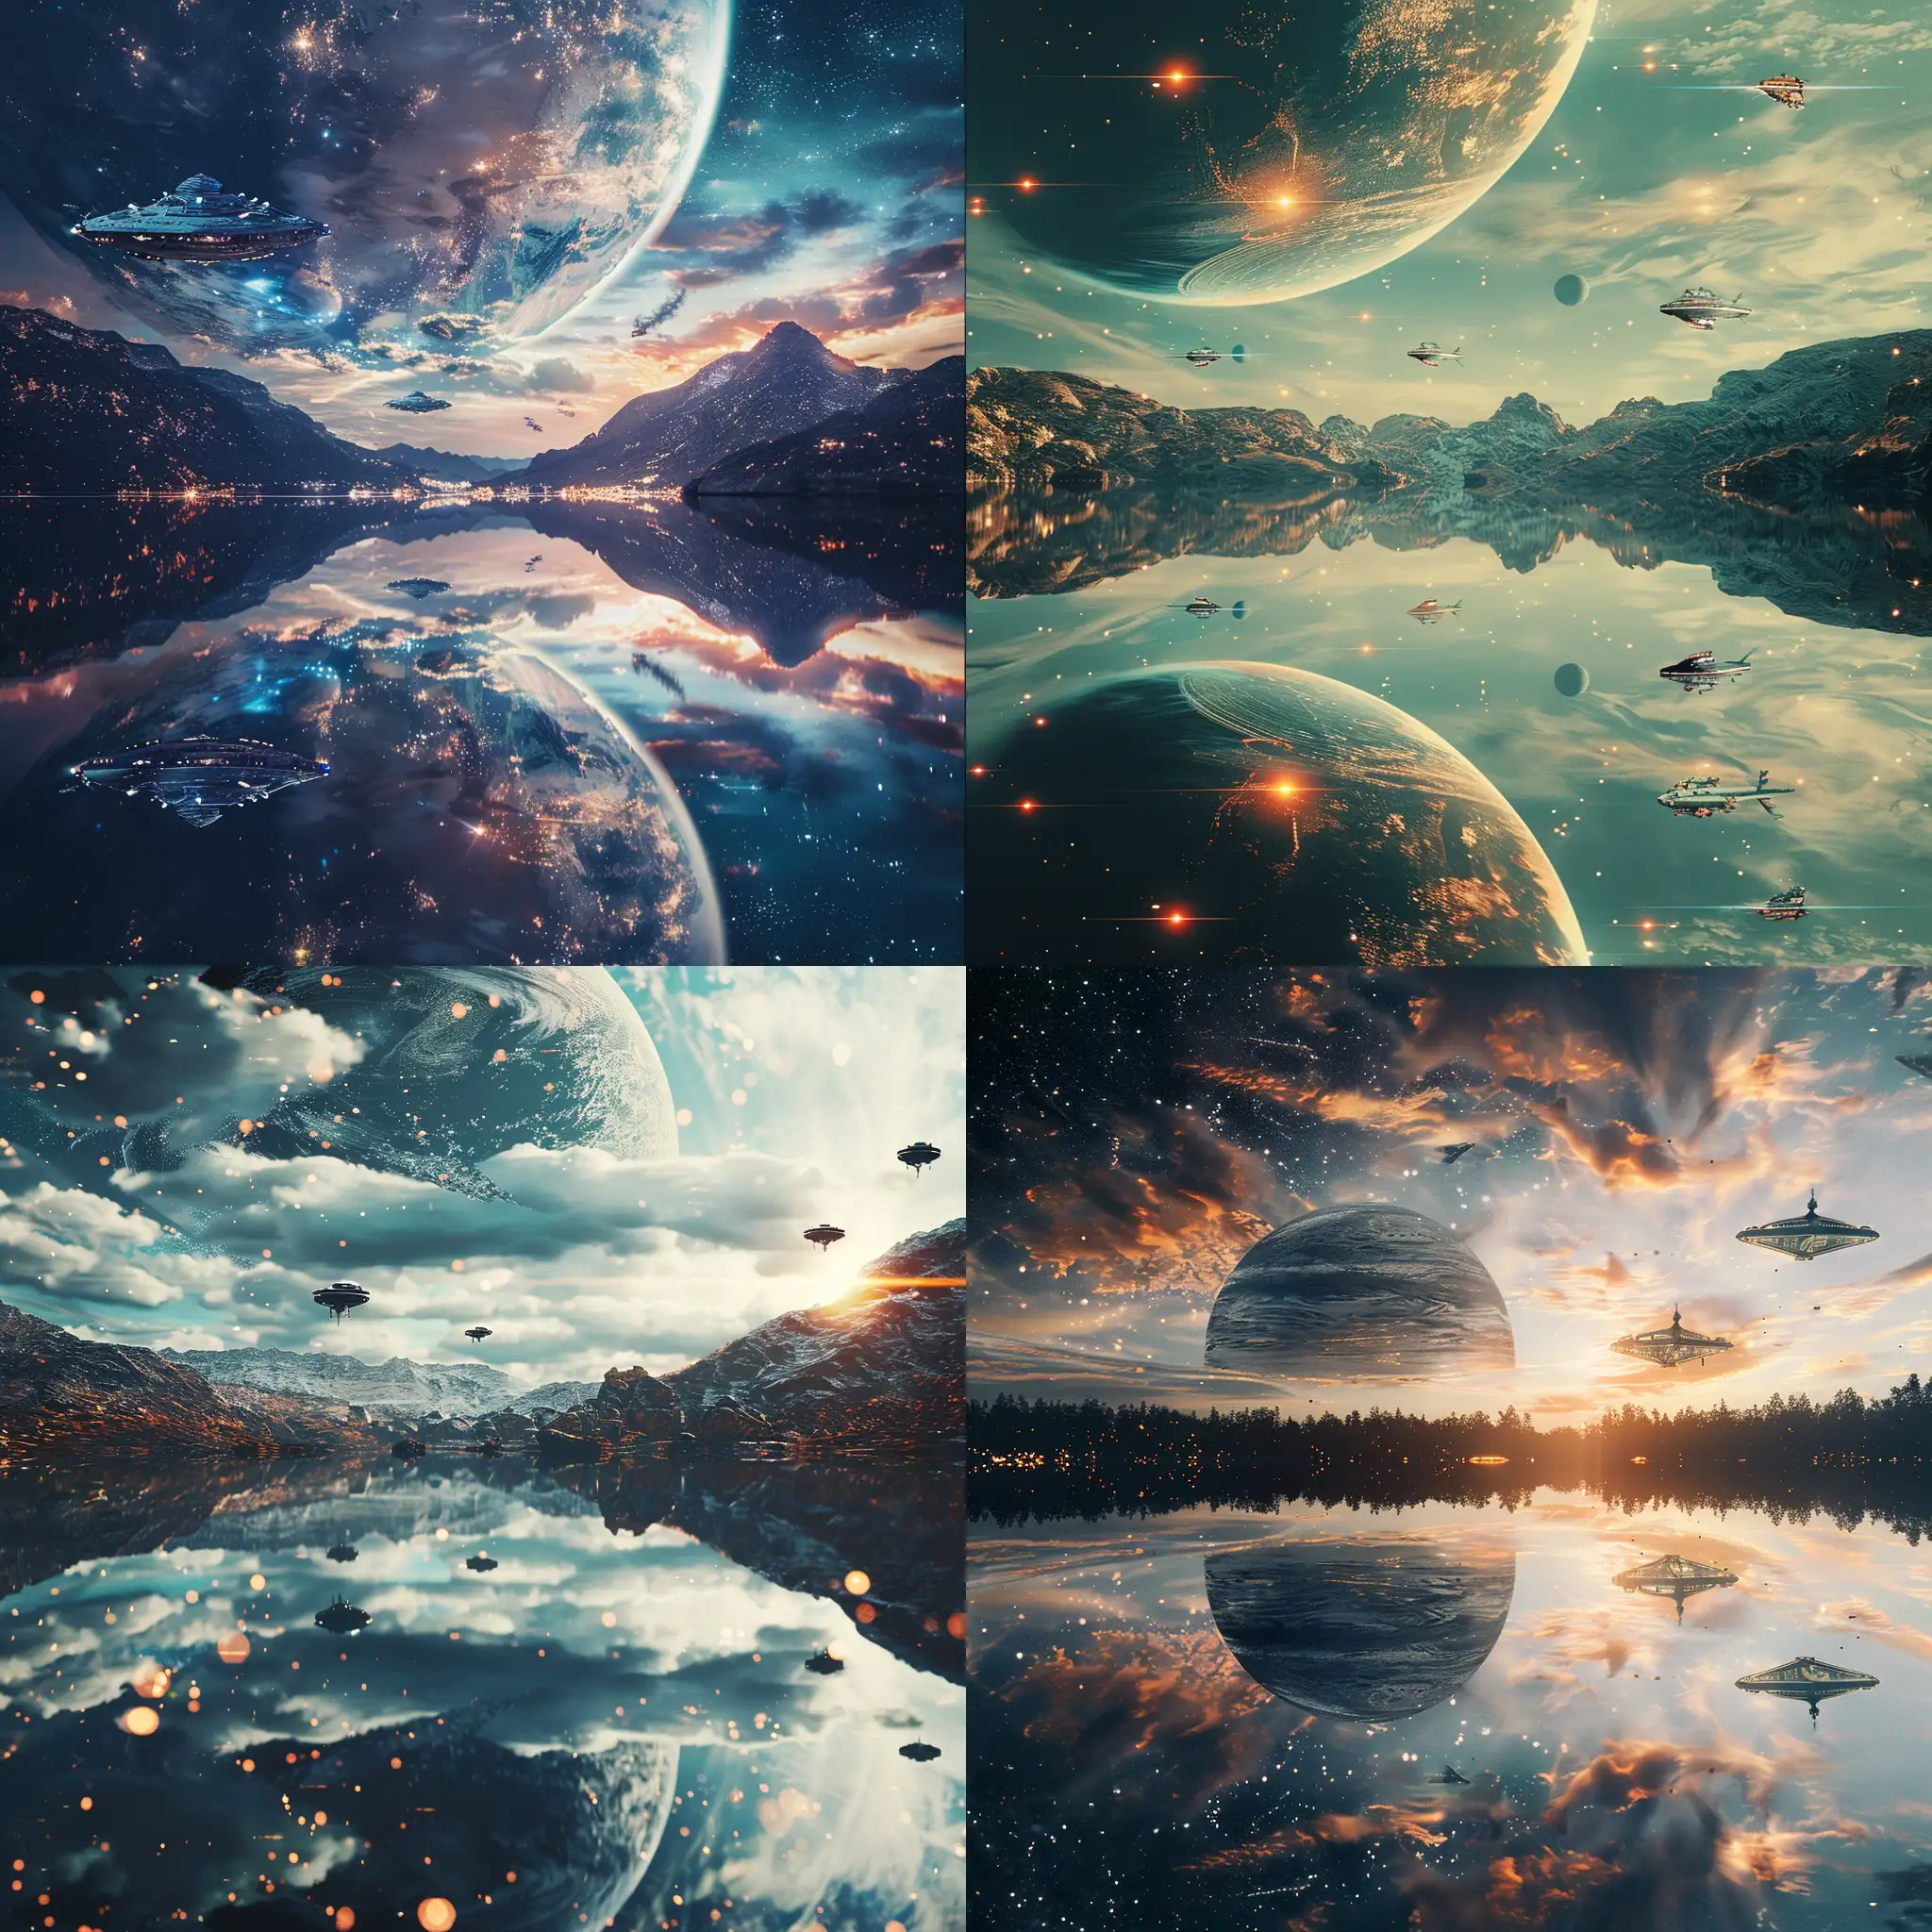  Фантастическая планета, космический пейзаж, озеро, отражение, на небе космические корабли, 8k, плёночная фотография, ультодетализация, рассеяние света, резкий фокус, высокая детализация 